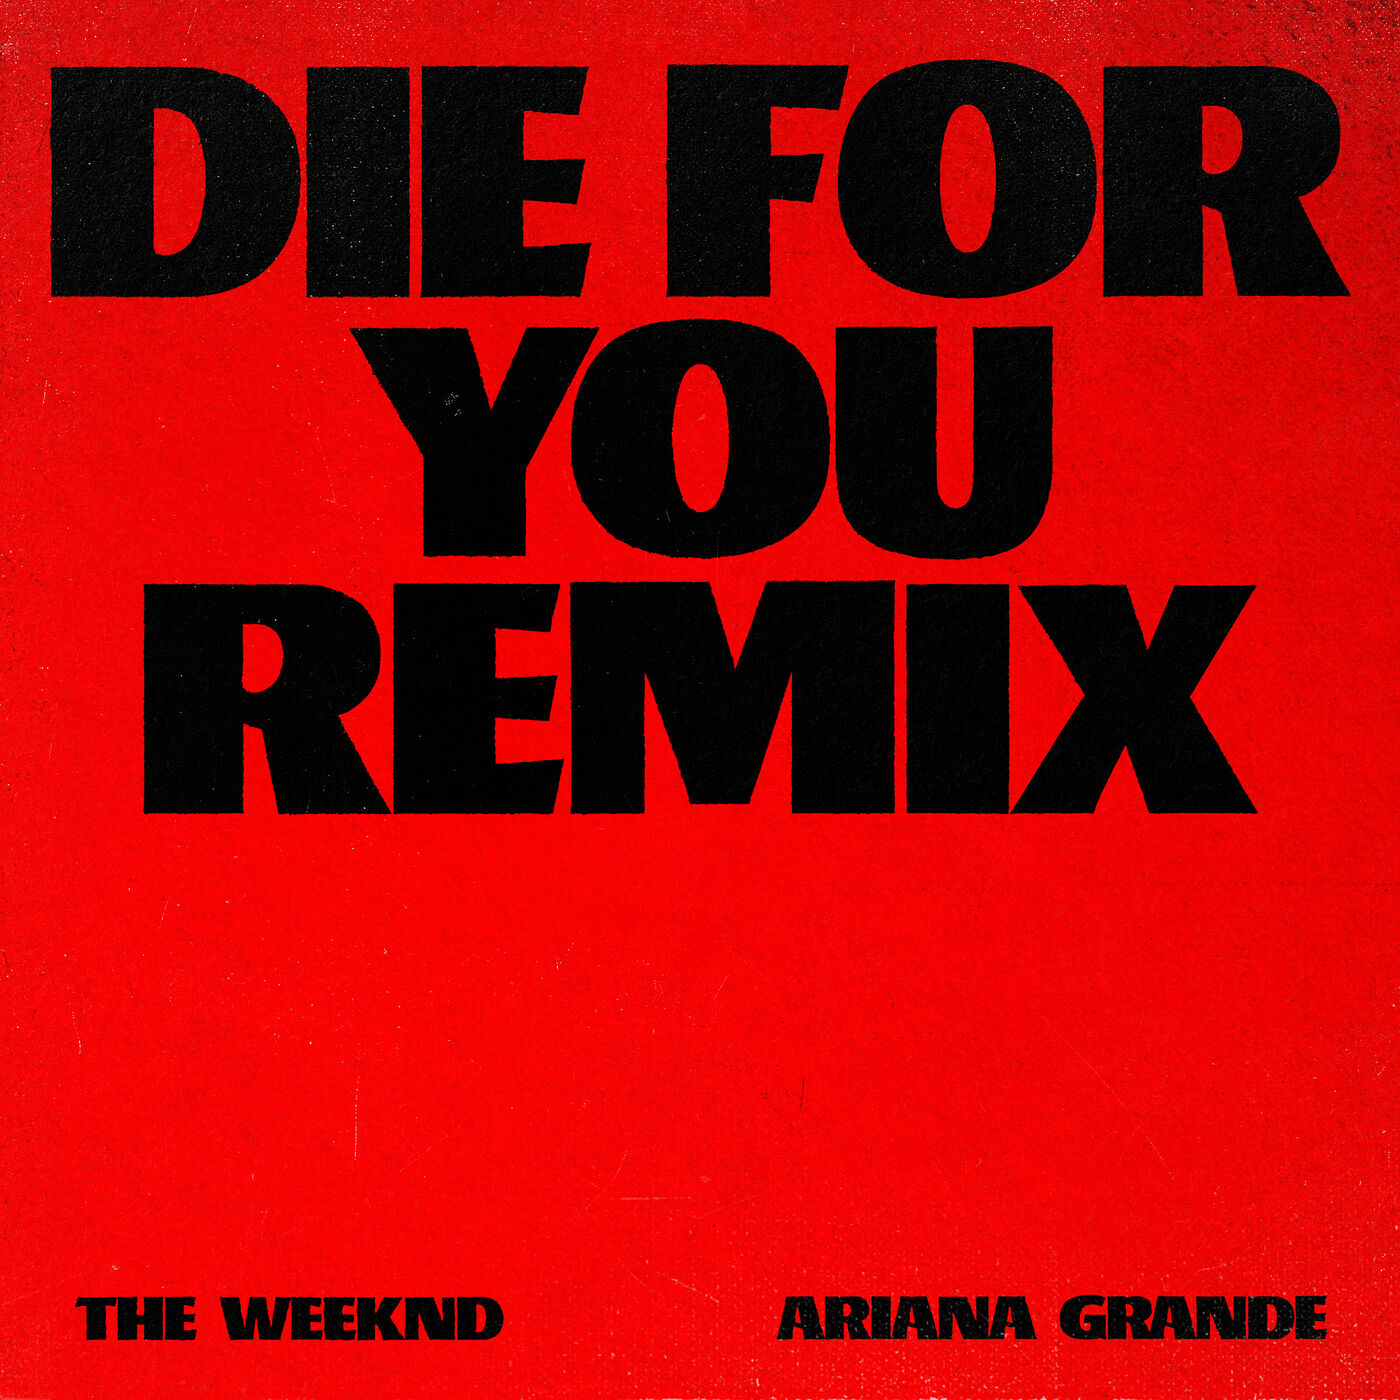 The Weeknd – Die For You【44.1kHz／16bit】美国区-OppsUpro音乐帝国